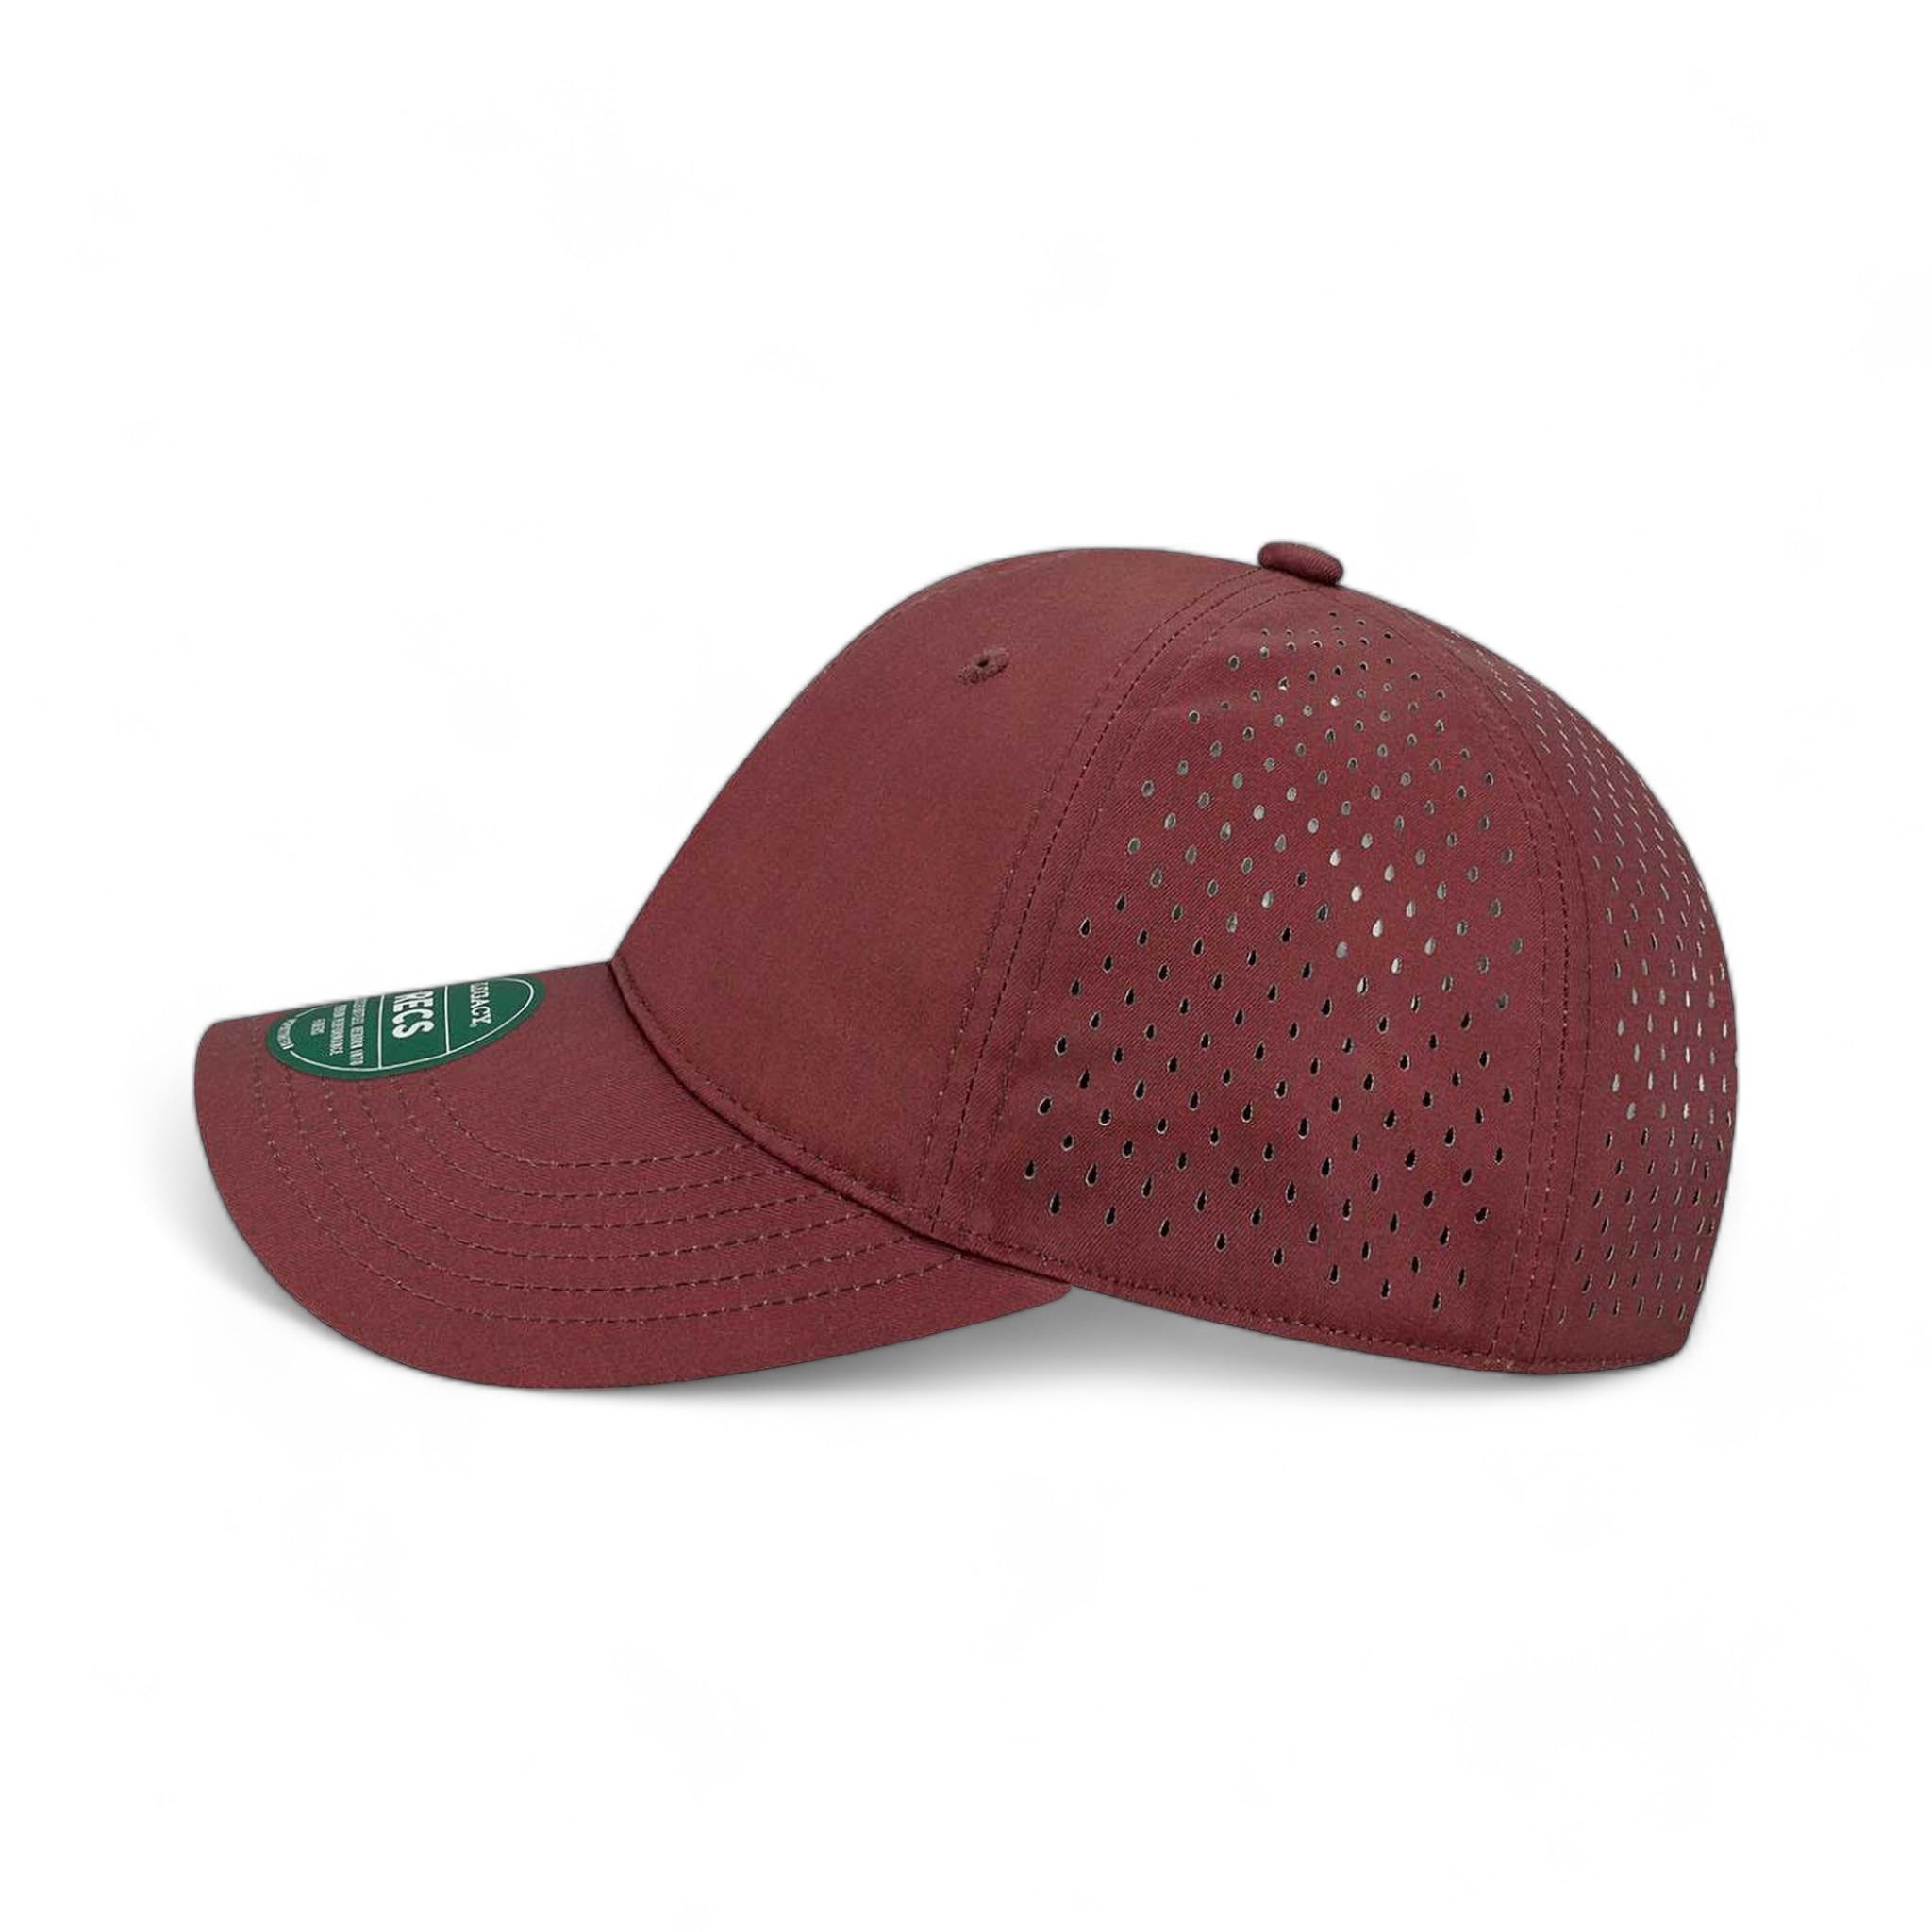 Side view of LEGACY RECS custom hat in eco maroon